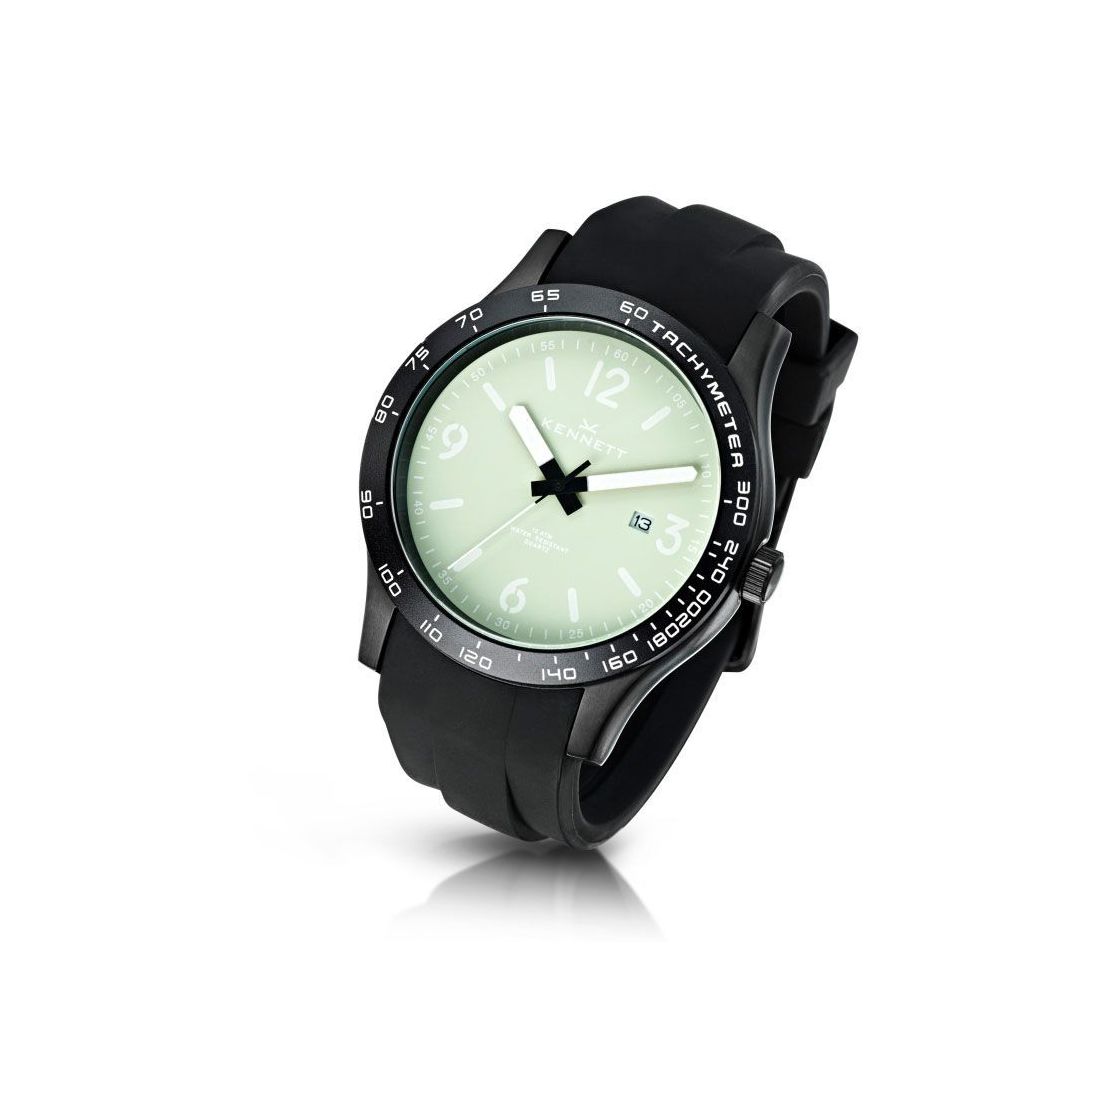 Montre, Kennett Altitude Watch - Cream and white Kennett